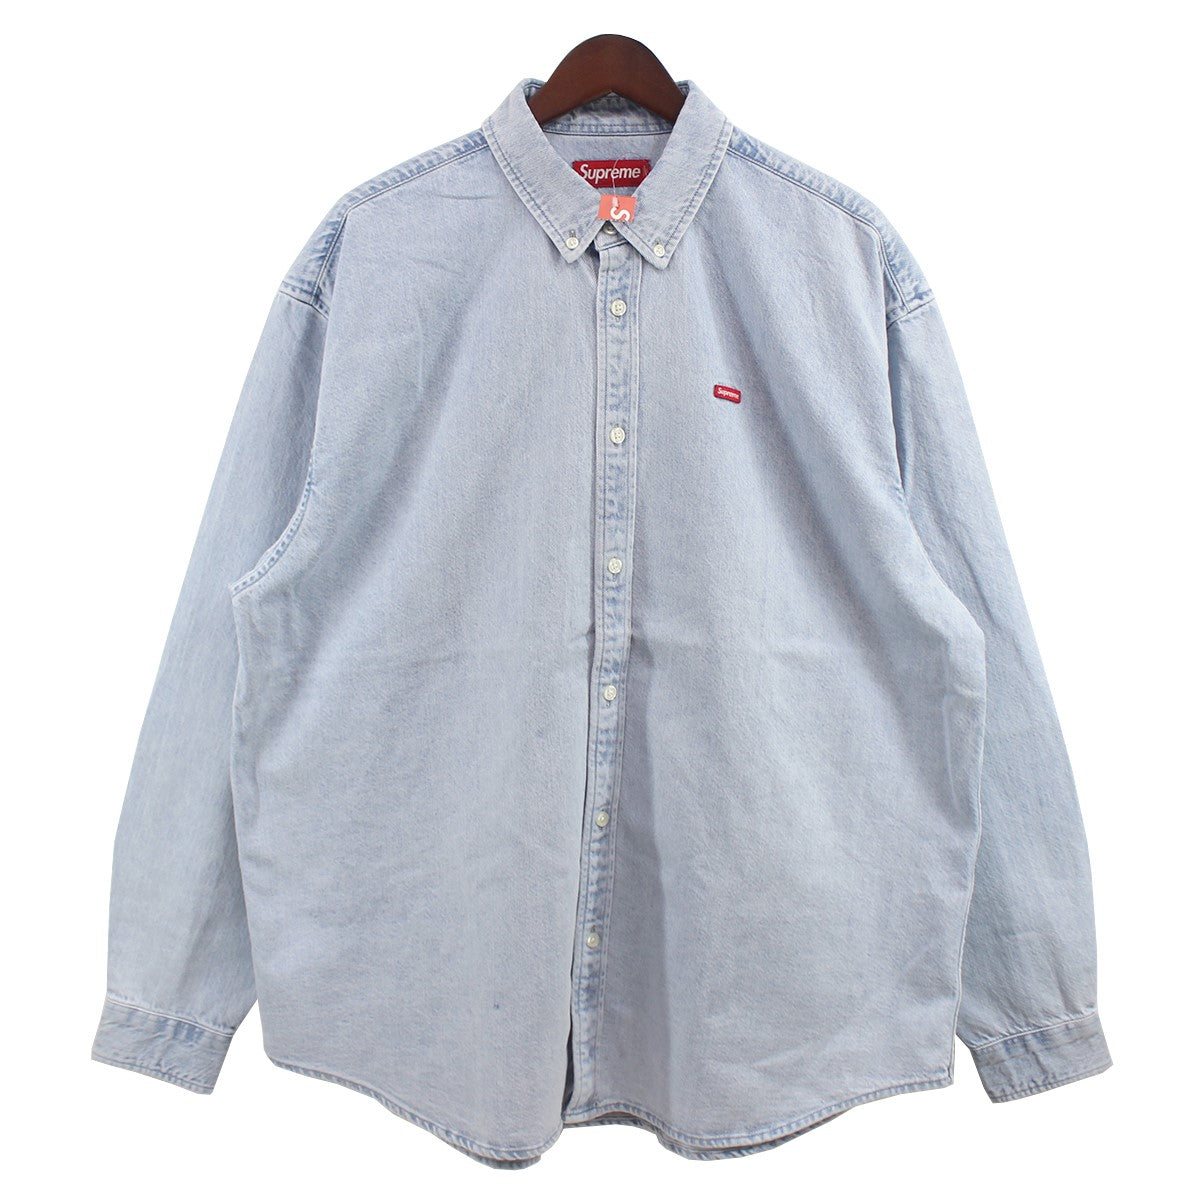 13,500円Supreme Small Box Shirt デニム Washed シャツ